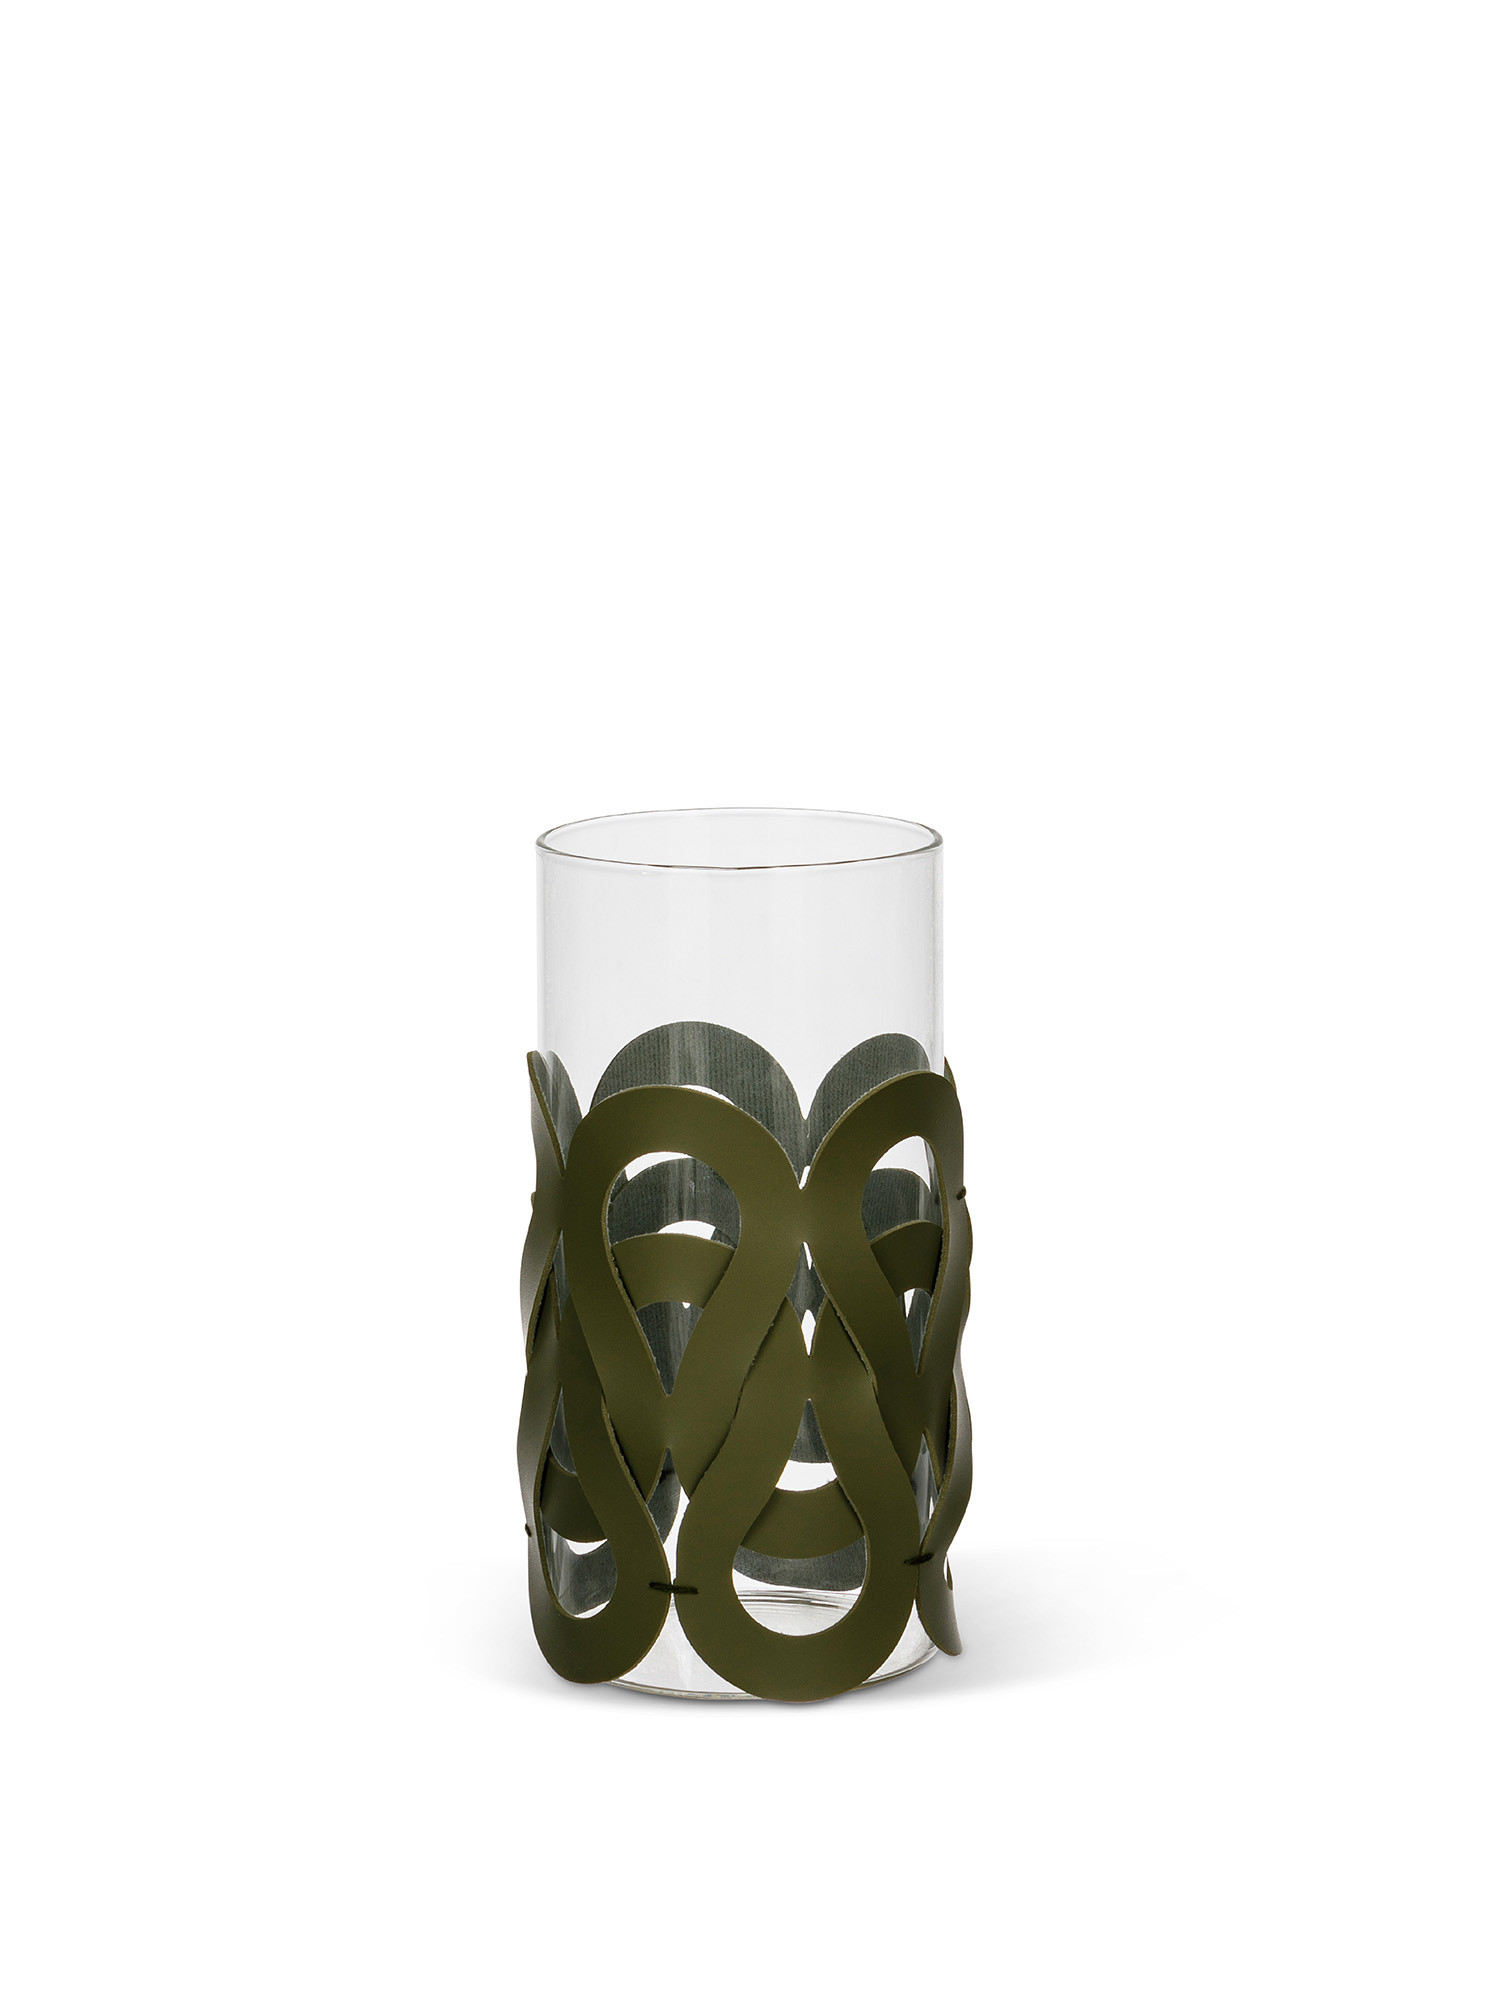 Antivento in vetro con decorazione ad intreccio, Verde, large image number 0